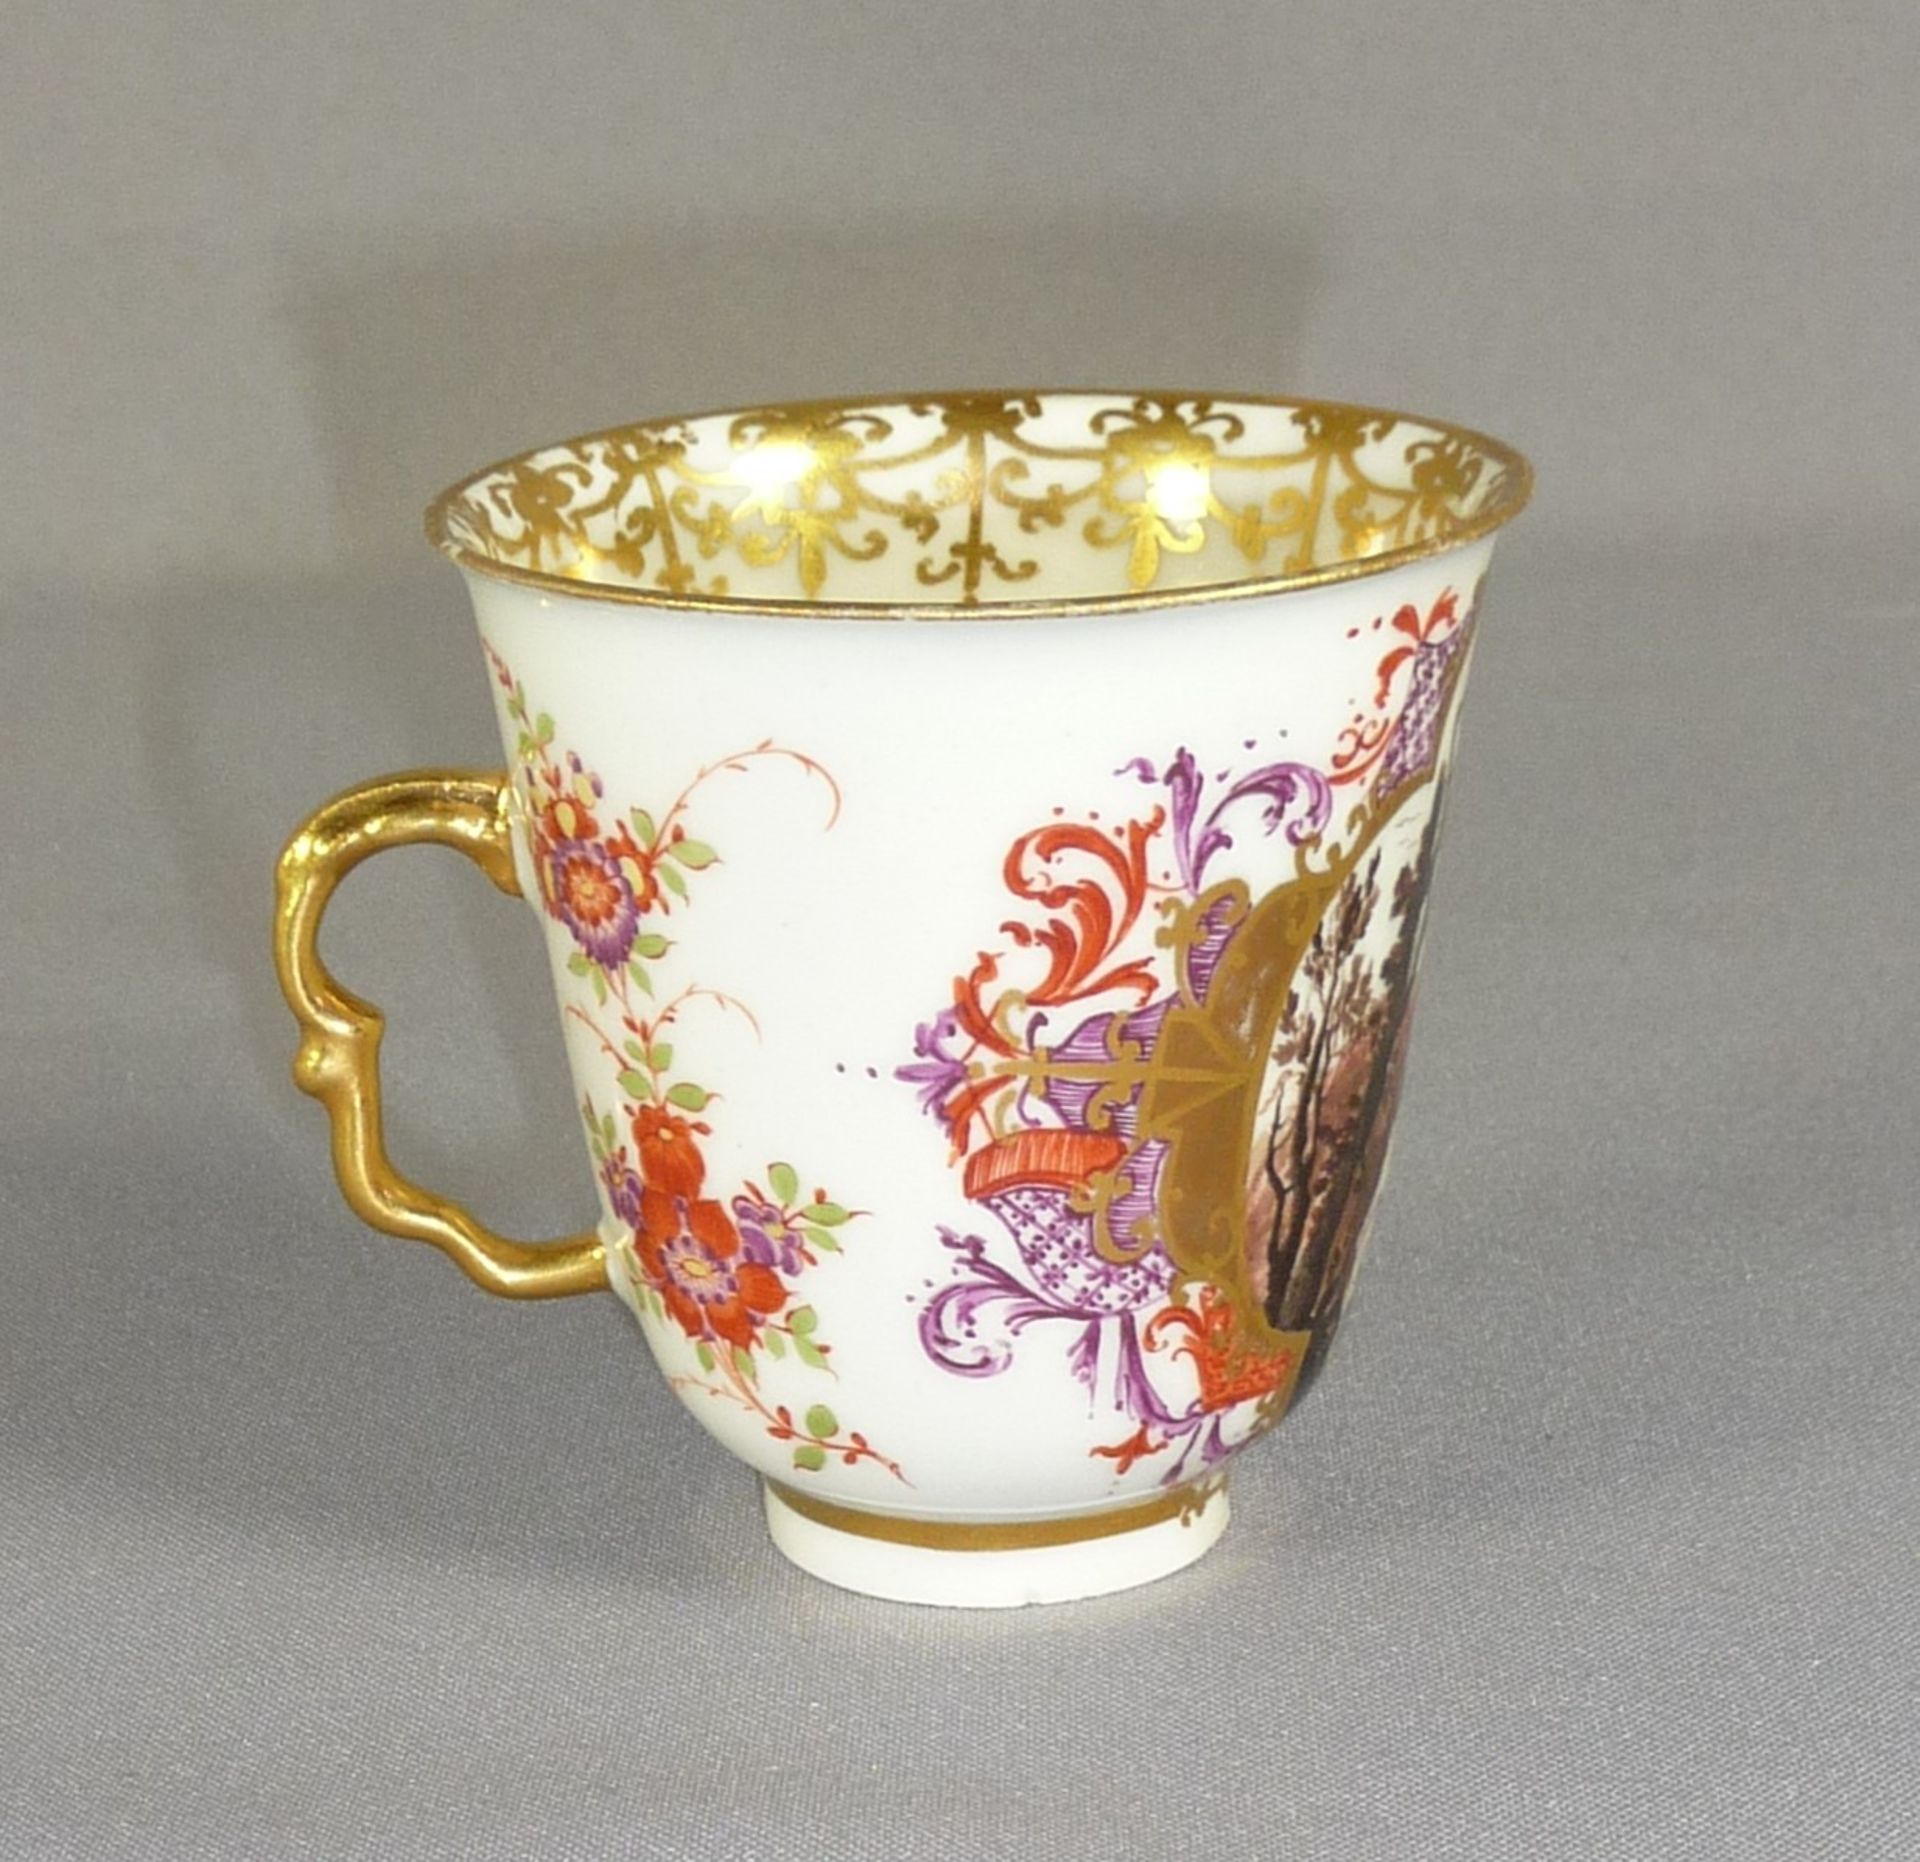 Bechertasse Meissen, um 1725/30 Schauseitig in reich ornamentierter Goldkartusche farbig gemalte - Image 3 of 5